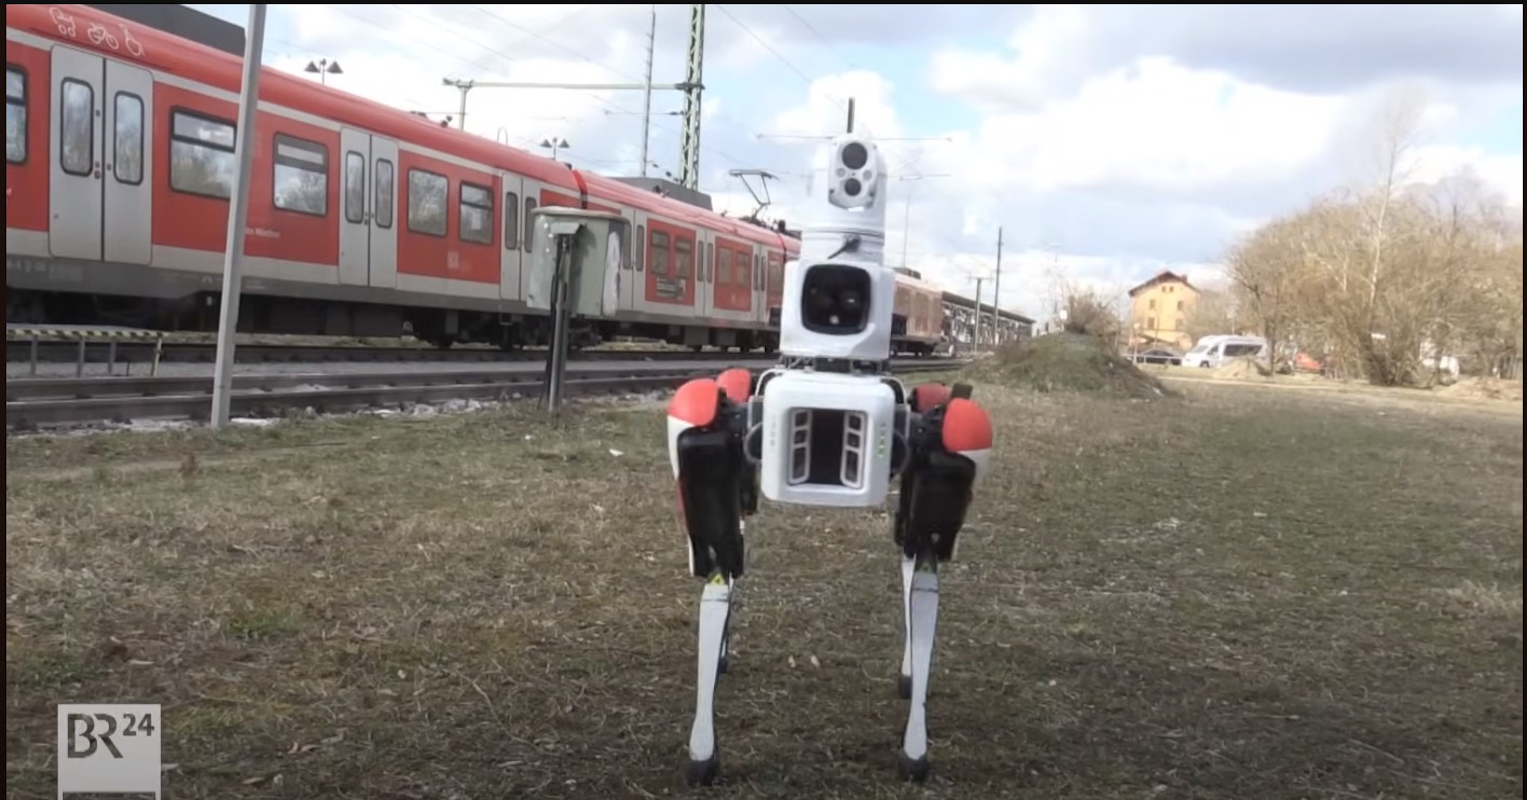 BR24_Deutschen Bahn Roboterhund soll Sprayer aufspüren- Spot on for the next step security on DB